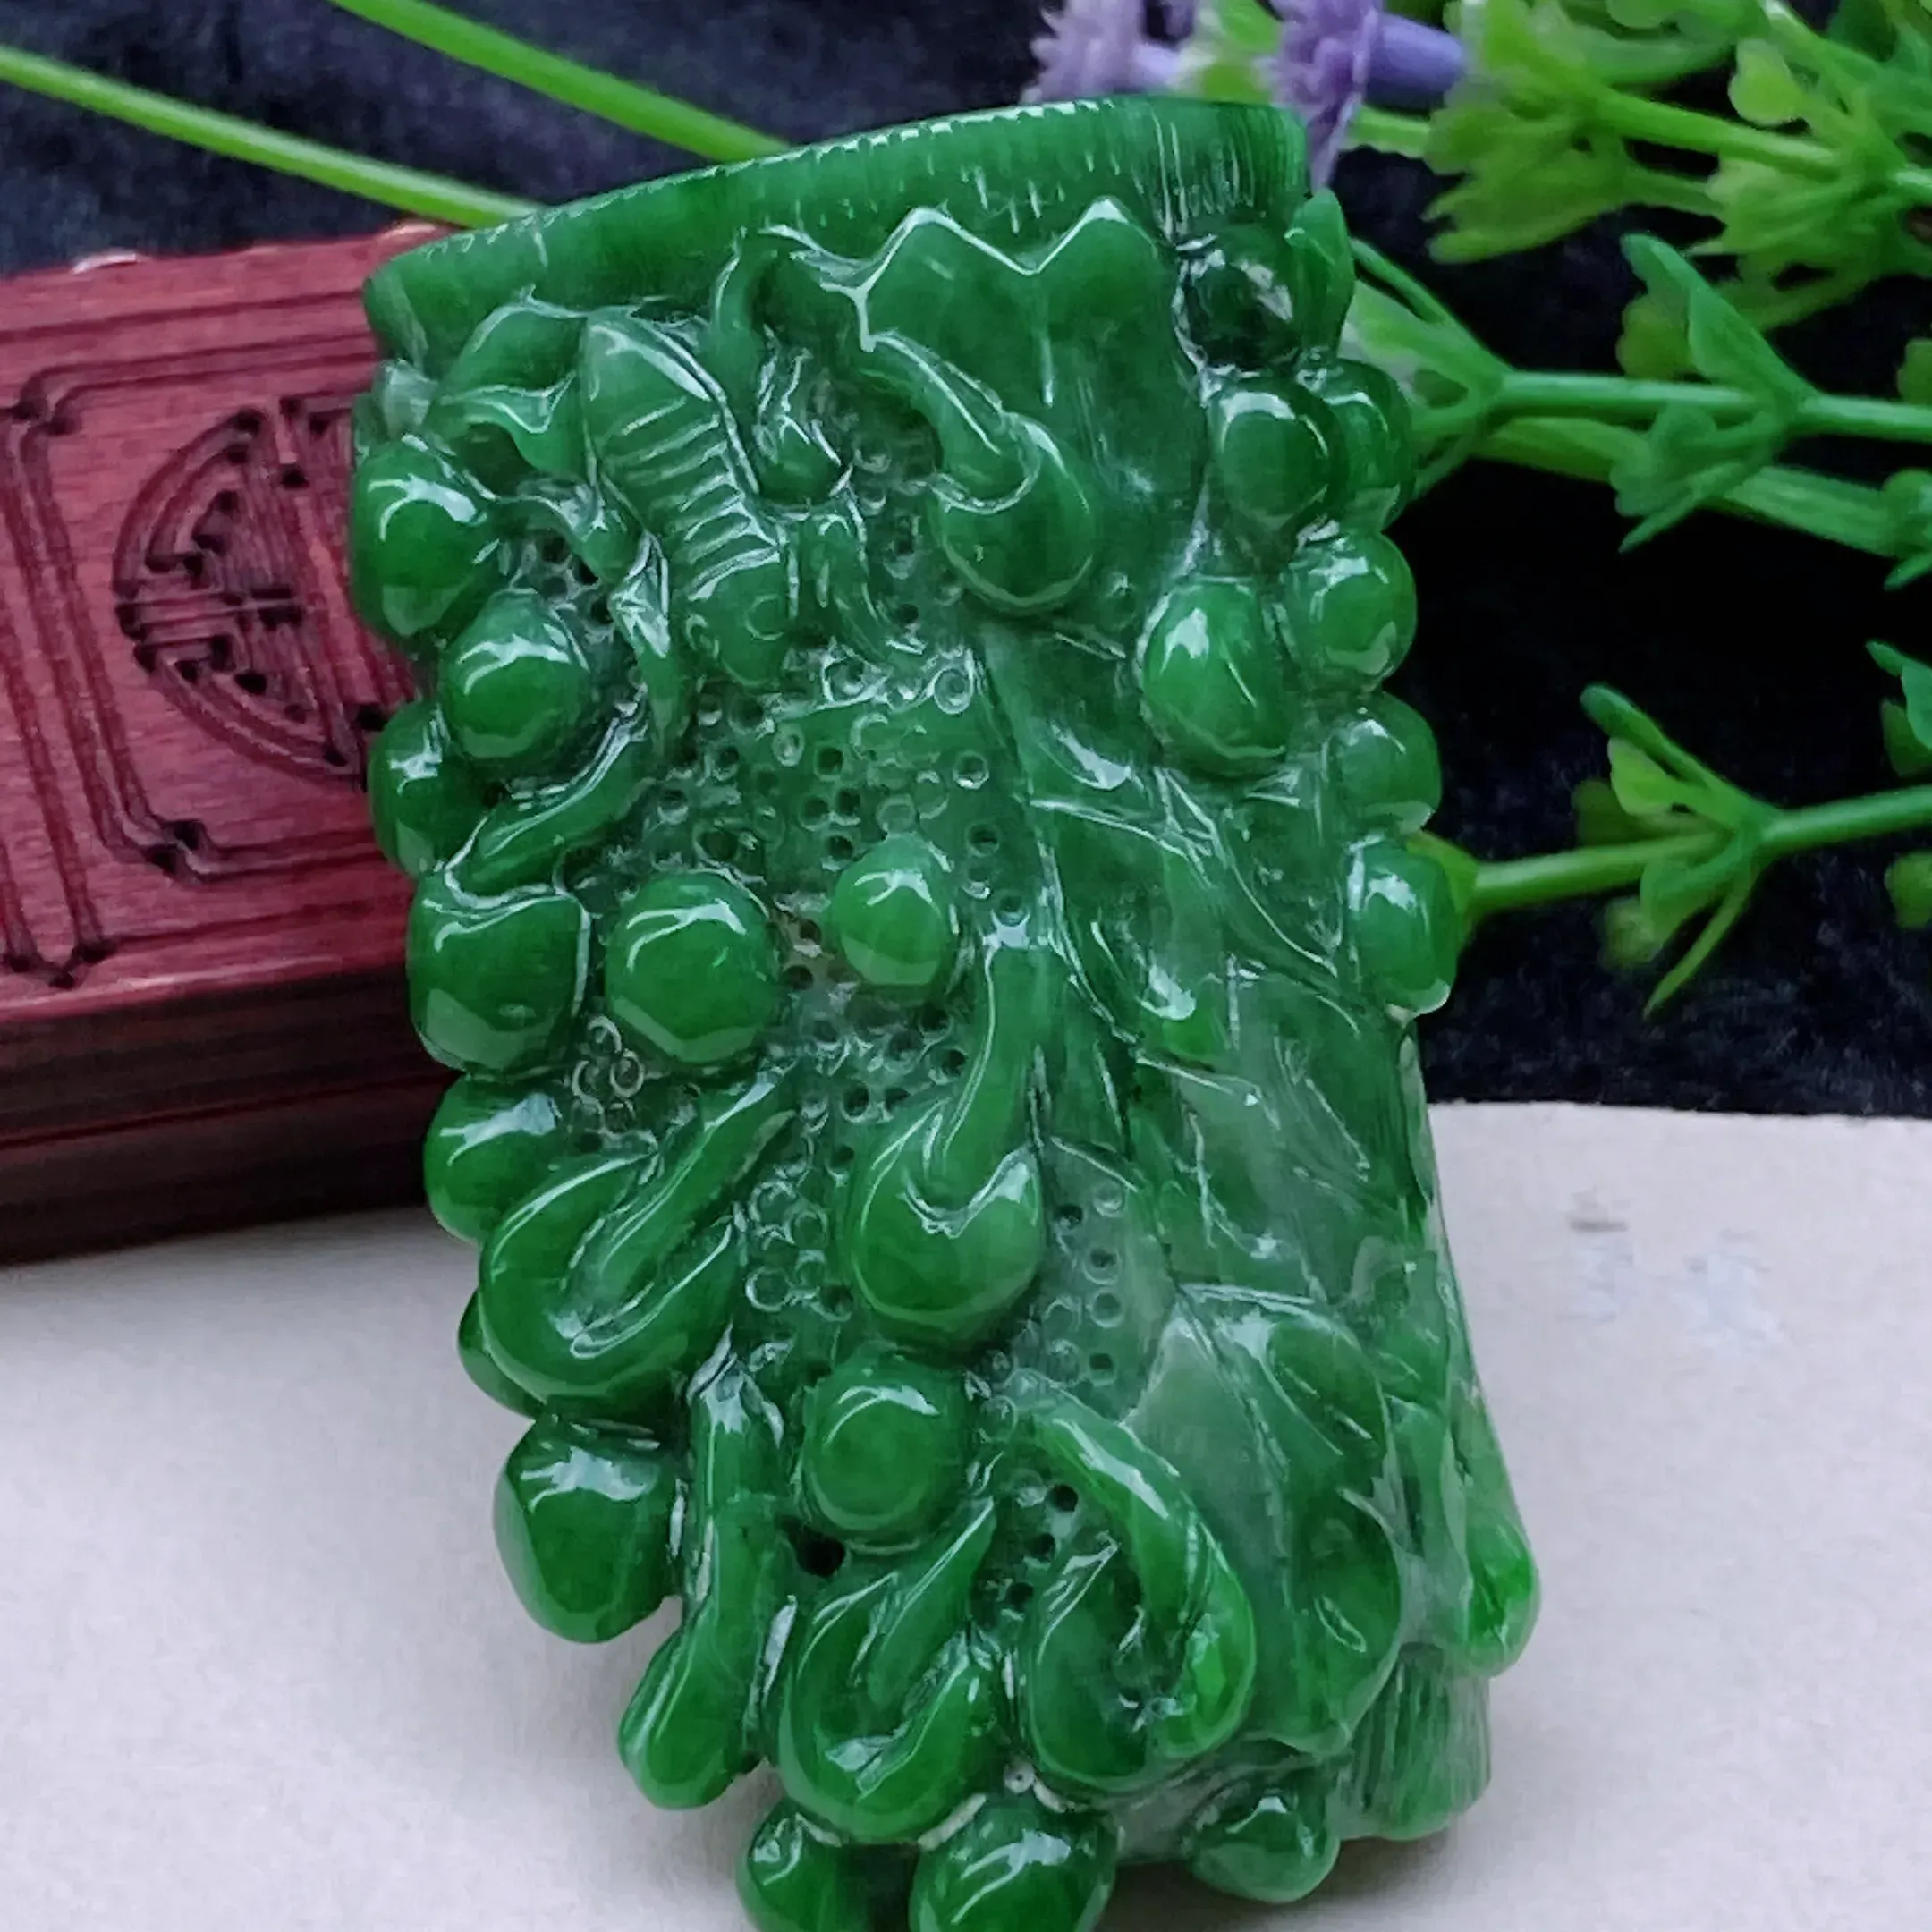 自然光实拍  水润精工冰透满绿枯木逢春手把件。玉质细腻莹润 雕工精湛，佩戴高雅大方   线条优美  尺寸:  55/33/20mm。